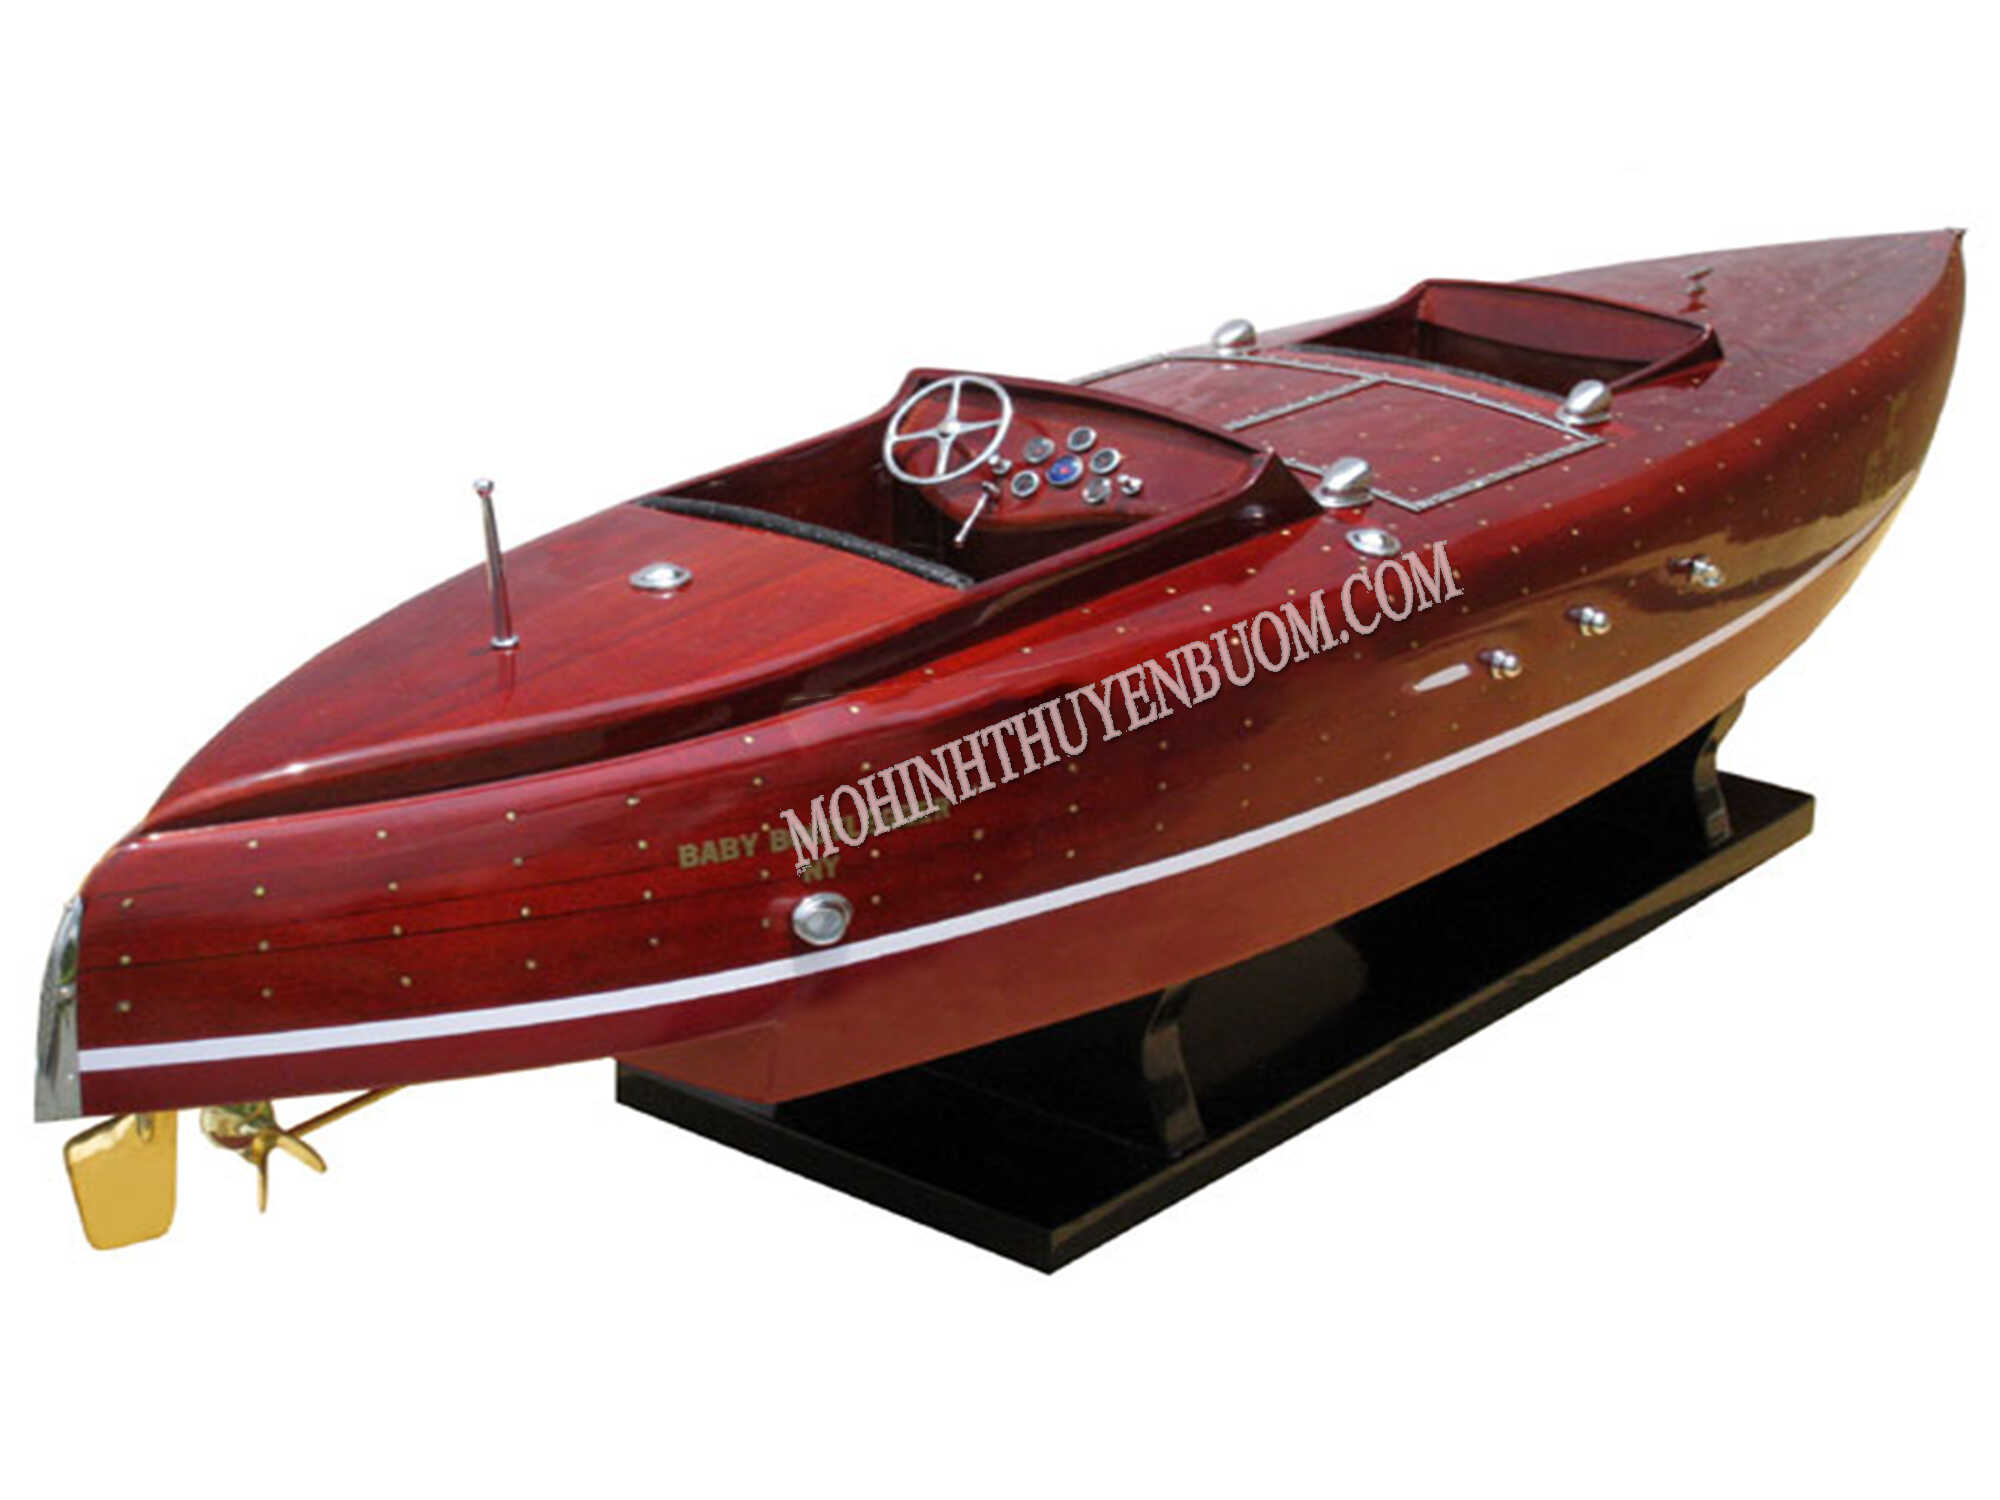 Baby Bootlegger Classic Speed Boat Model 35.4"